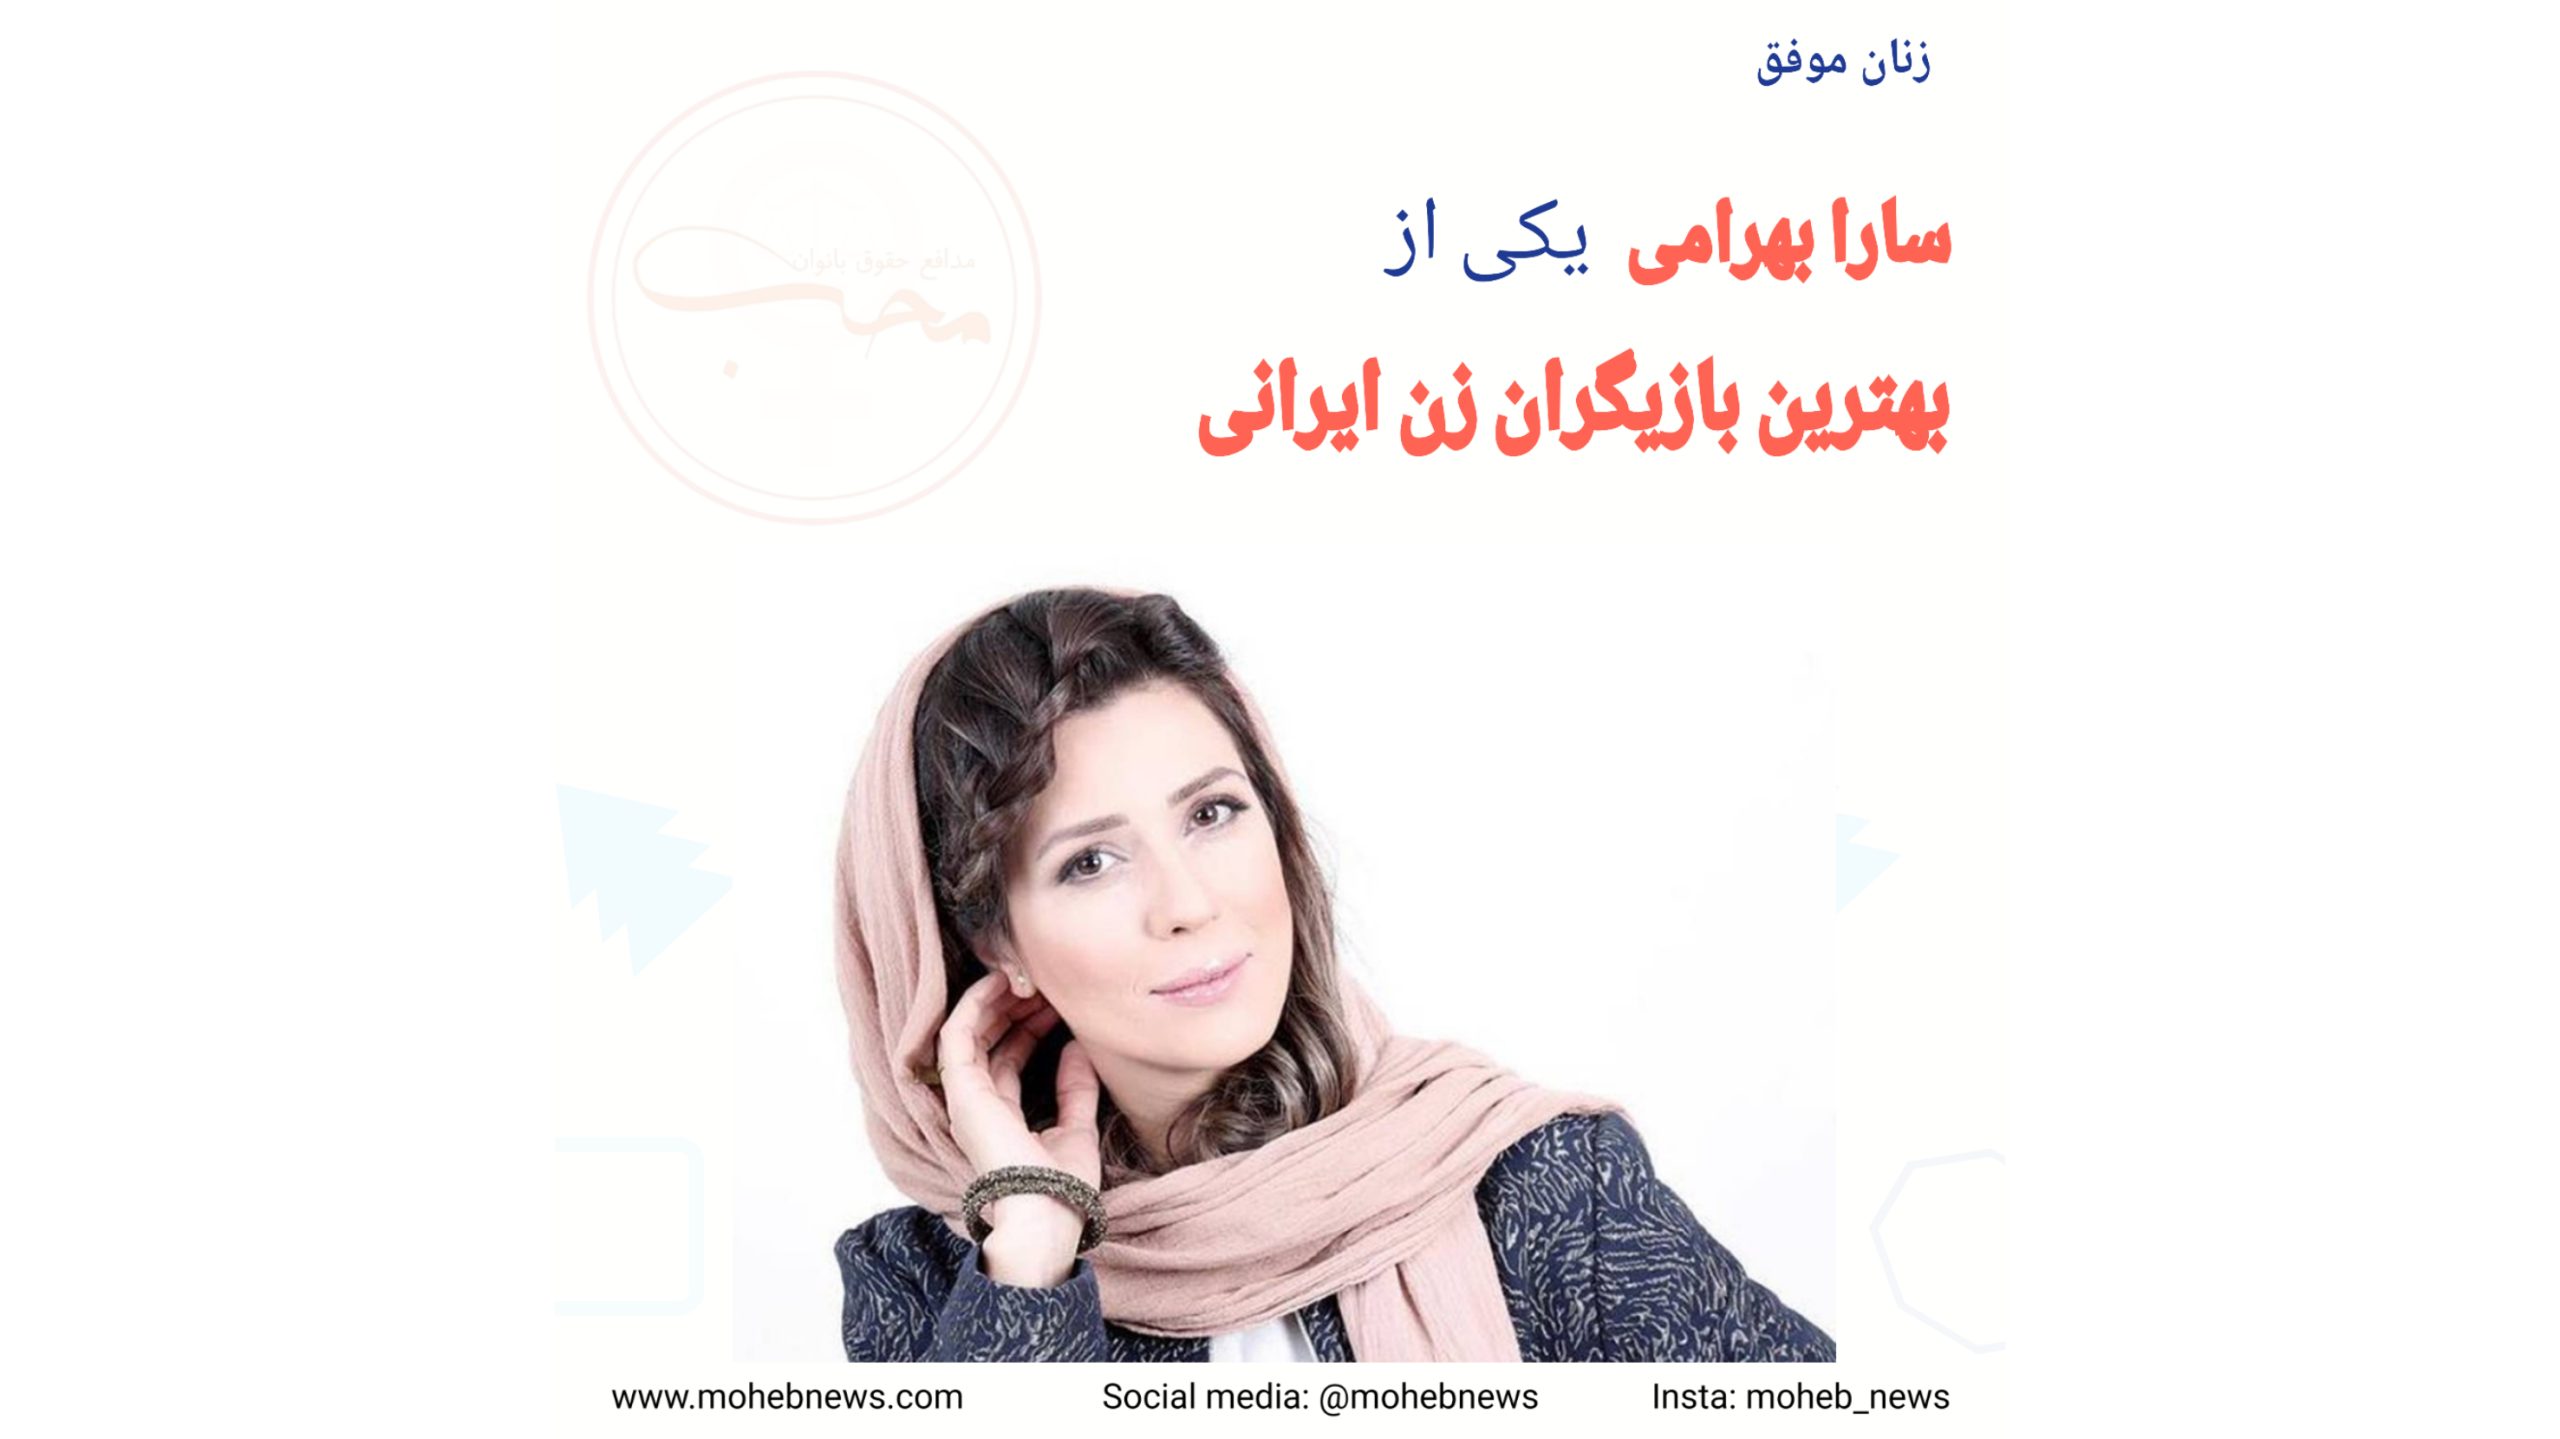 سارا بهرامی، بهترین بازیگر زن ایرانی | محب نیوز